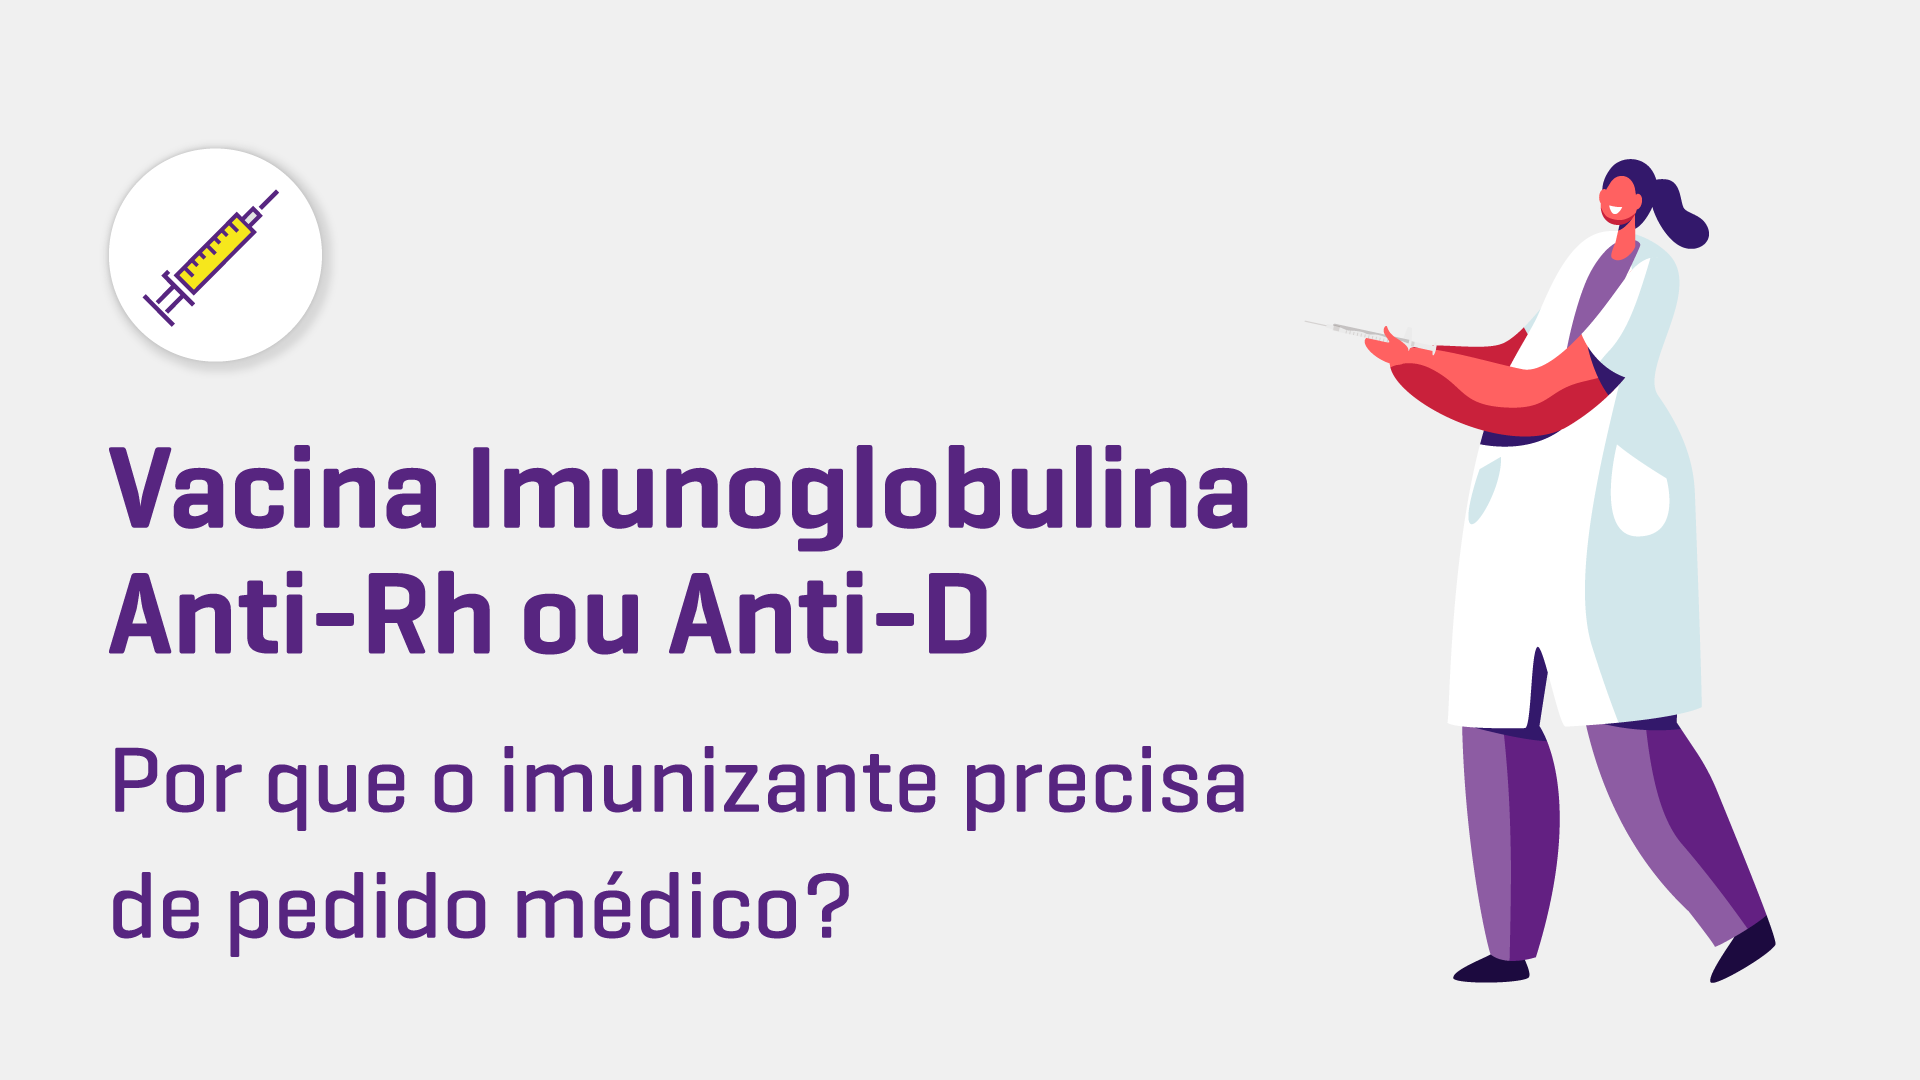 Por que a Vacina Imunoglobulina Anti-Rh ou Anti-D precisa de pedido médico?